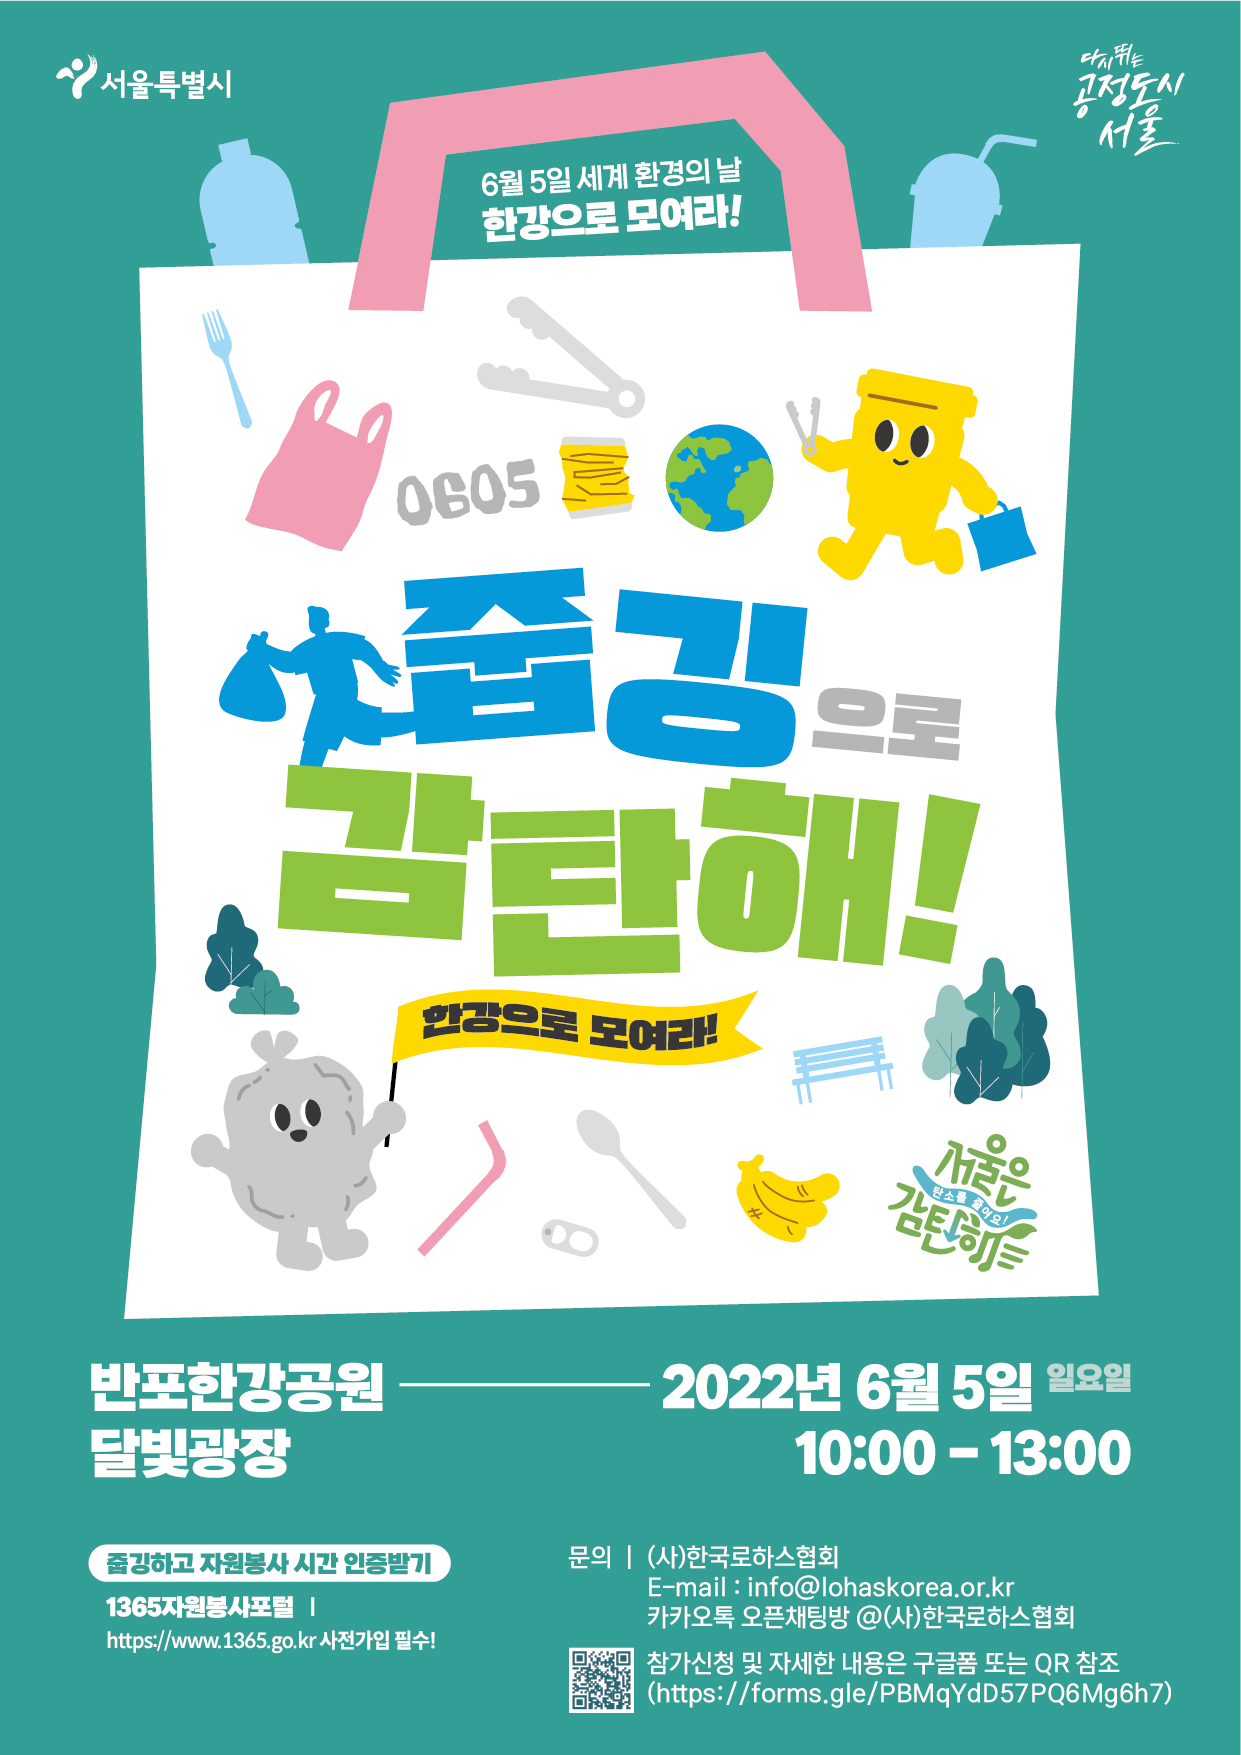 세계 환경의 날, 서울시 한강 줍깅 행사